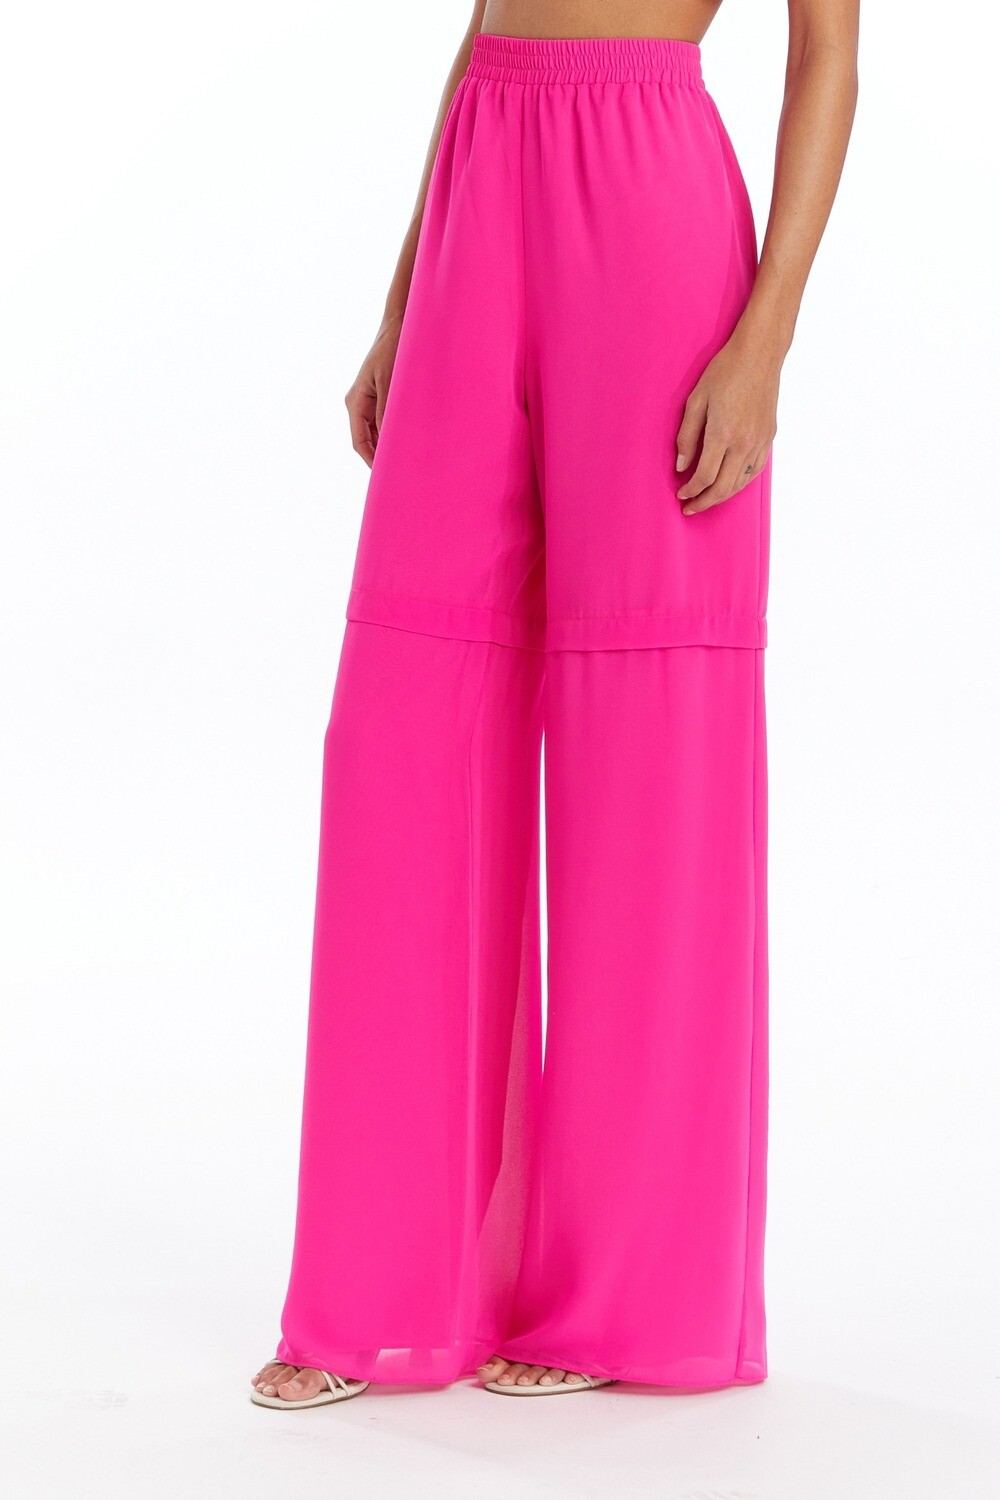 Sarasota pant, Color: pink, Size: xs